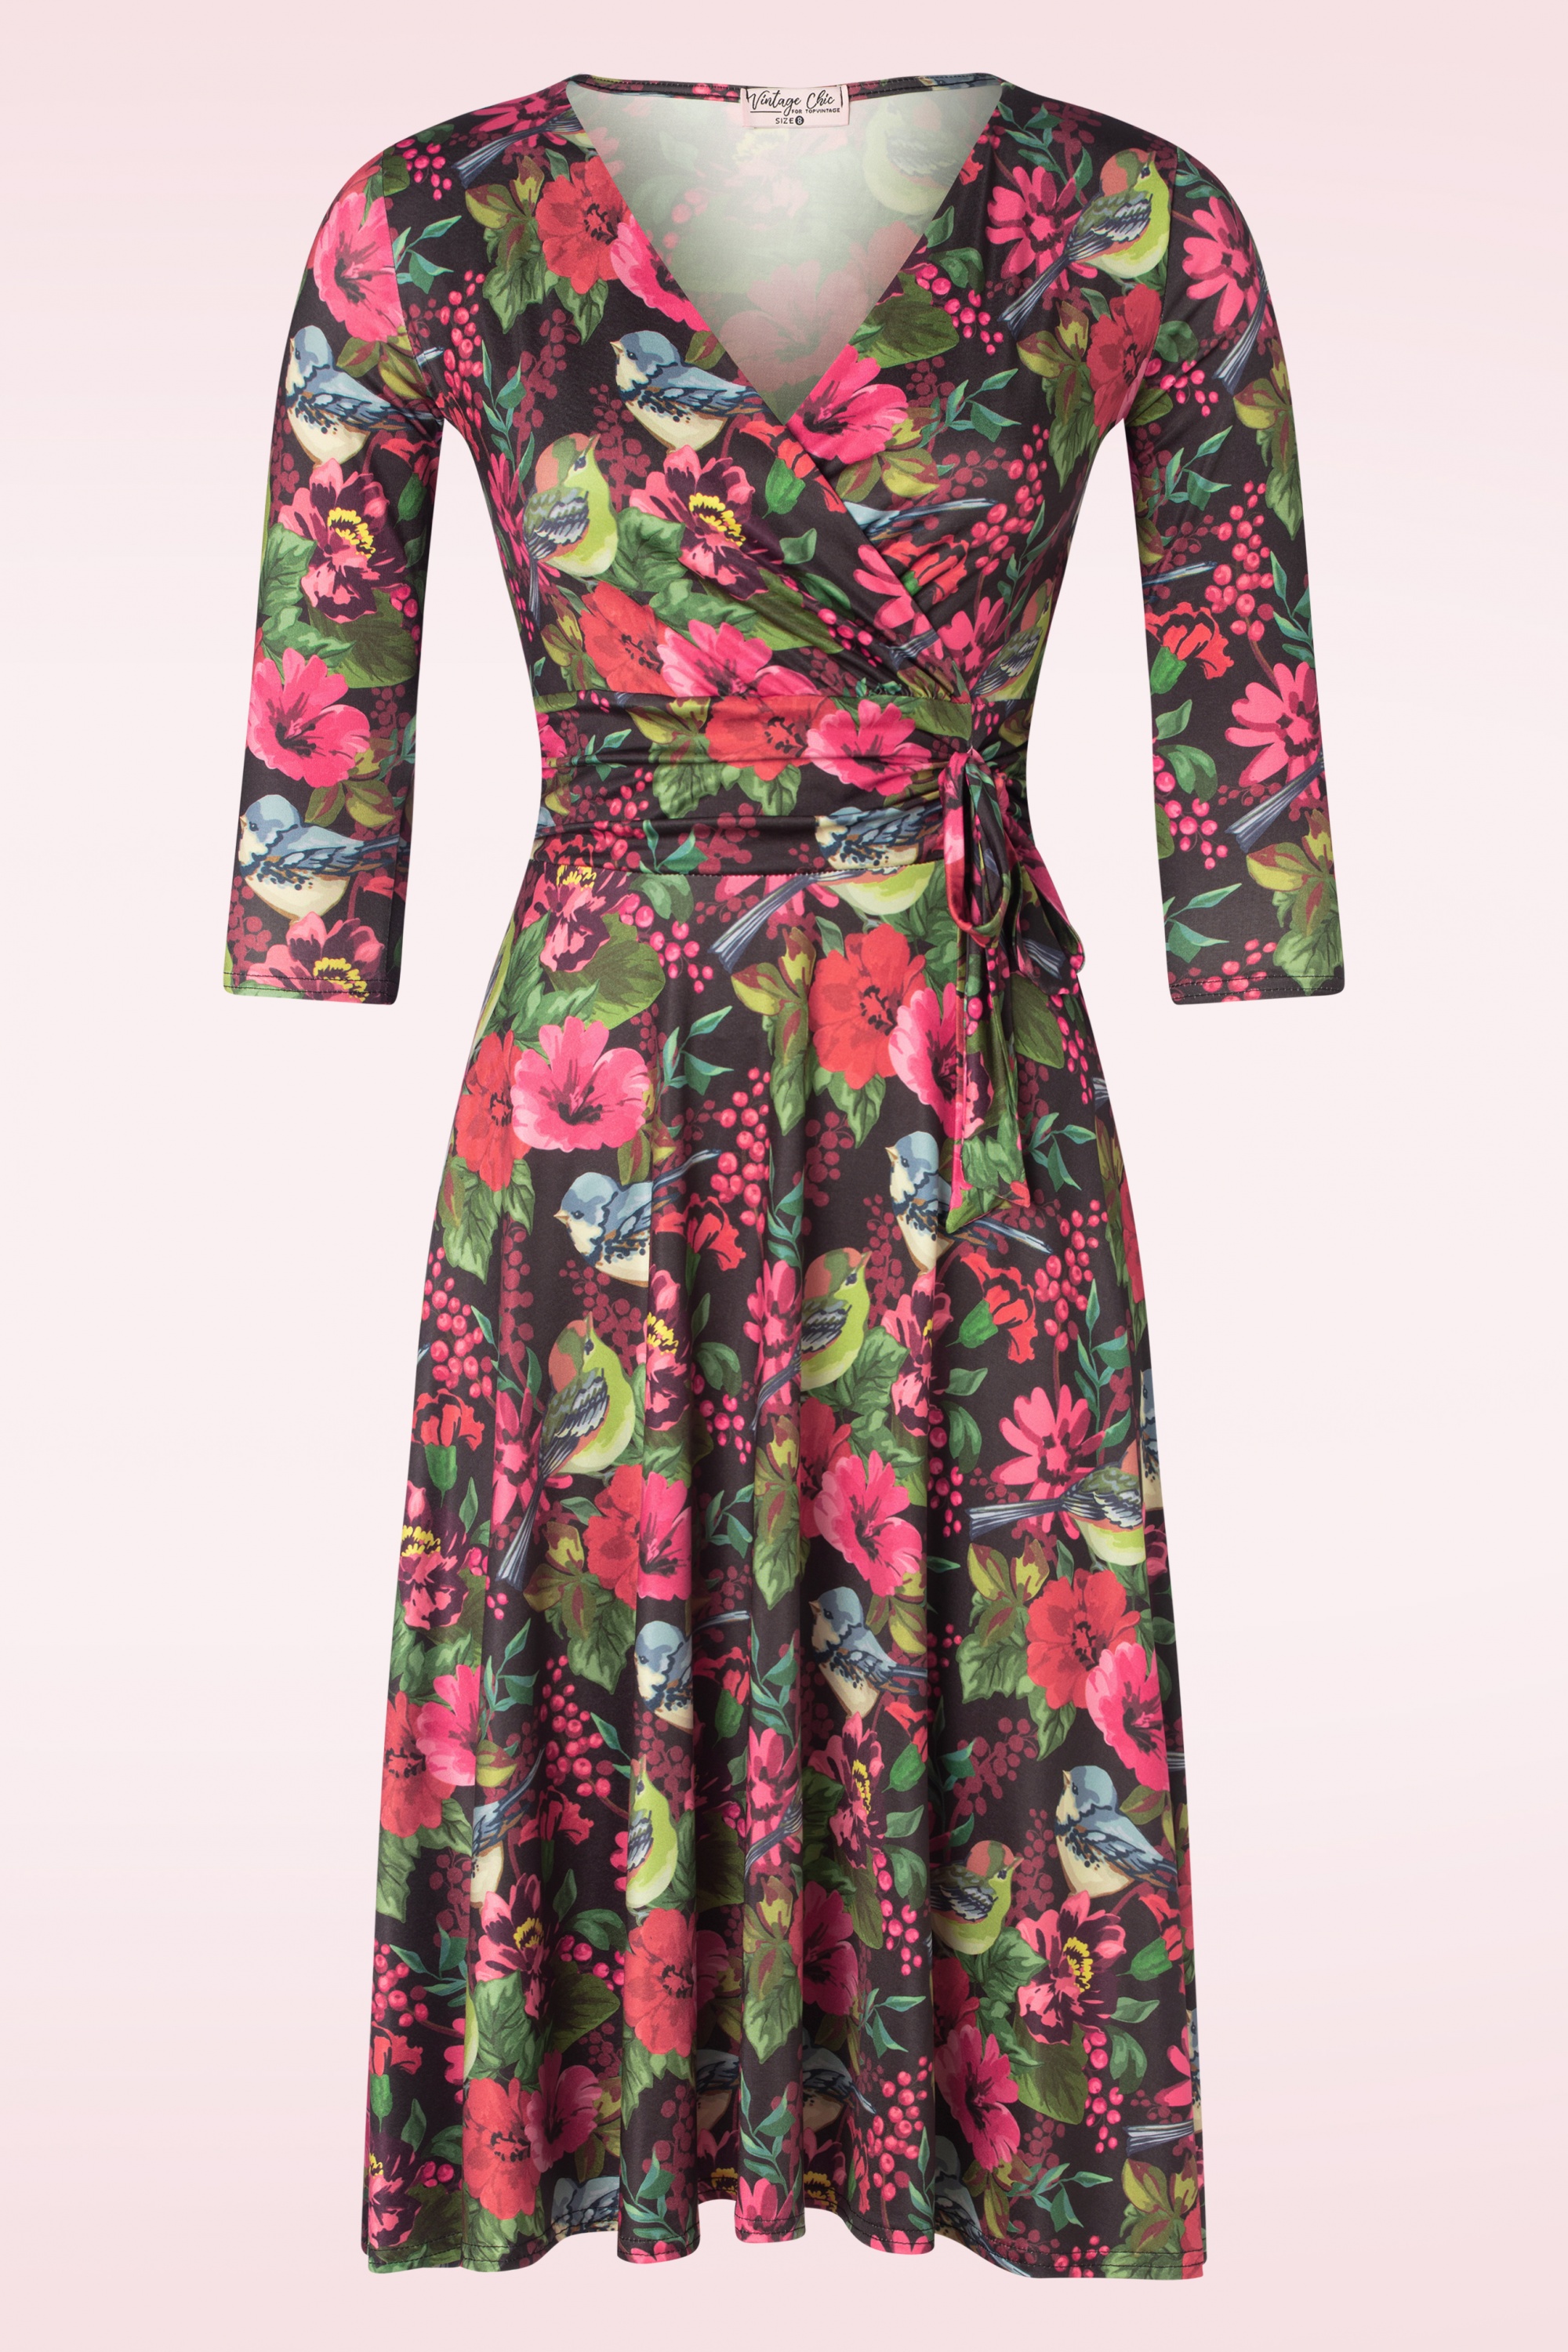 Vintage Chic for Topvintage - Aria floral bird print swing jurk in zwart